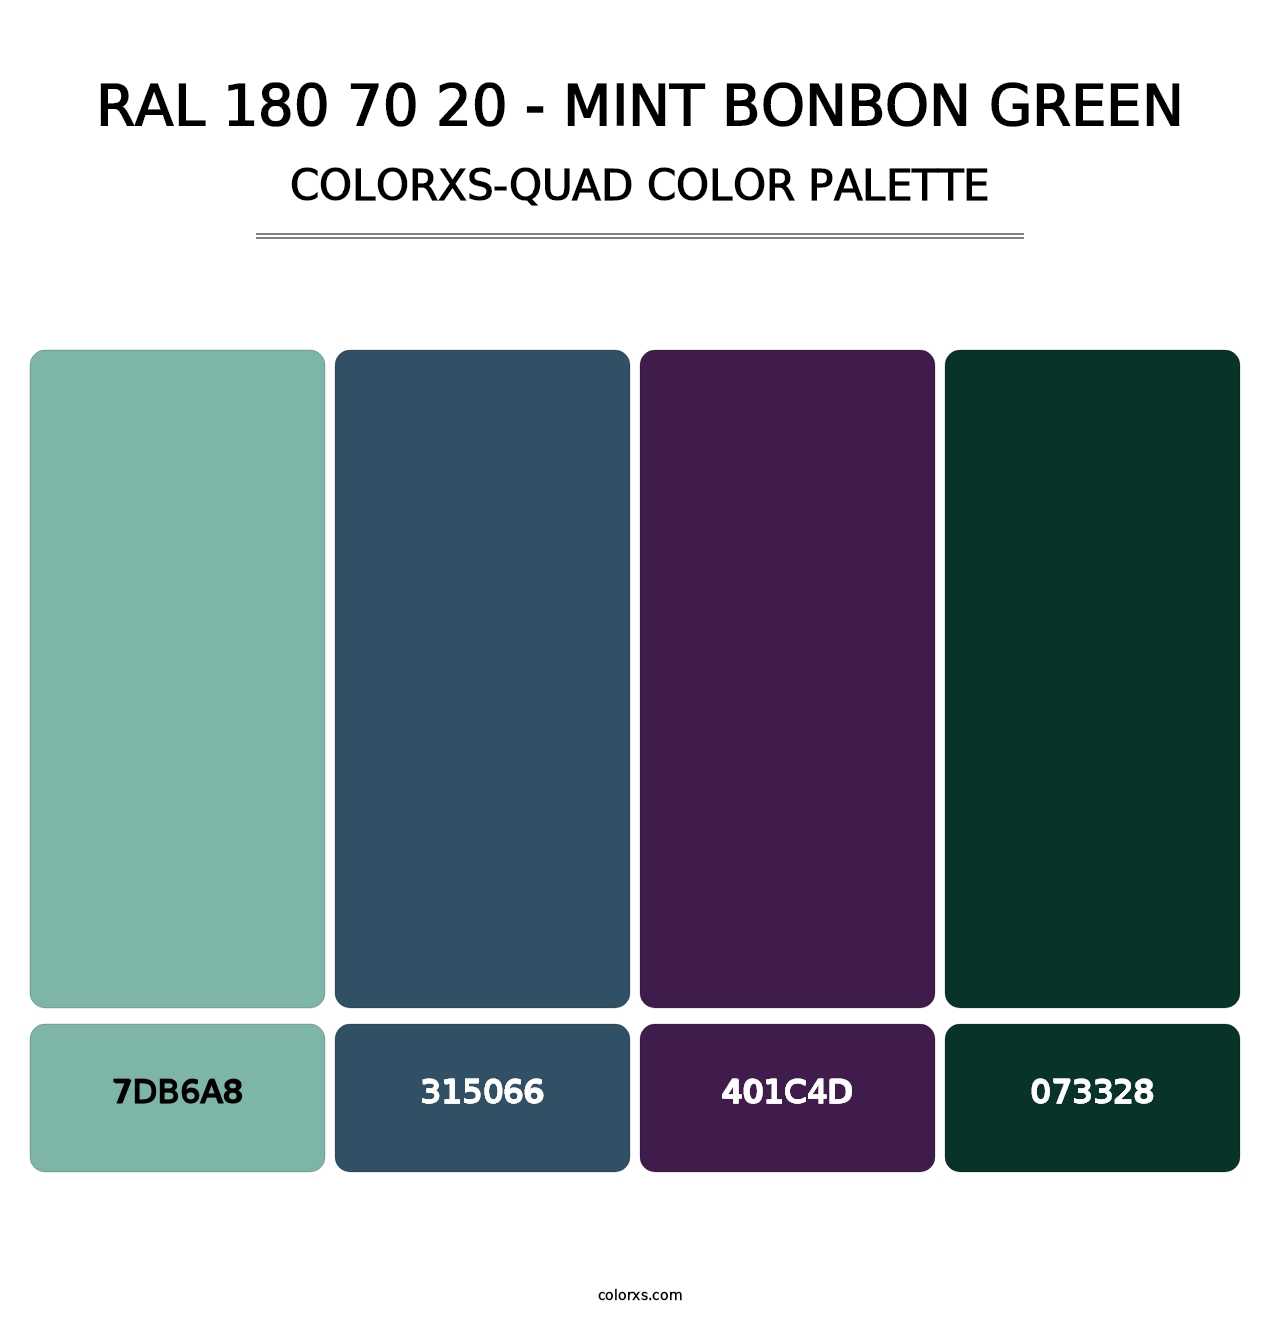 RAL 180 70 20 - Mint Bonbon Green - Colorxs Quad Palette